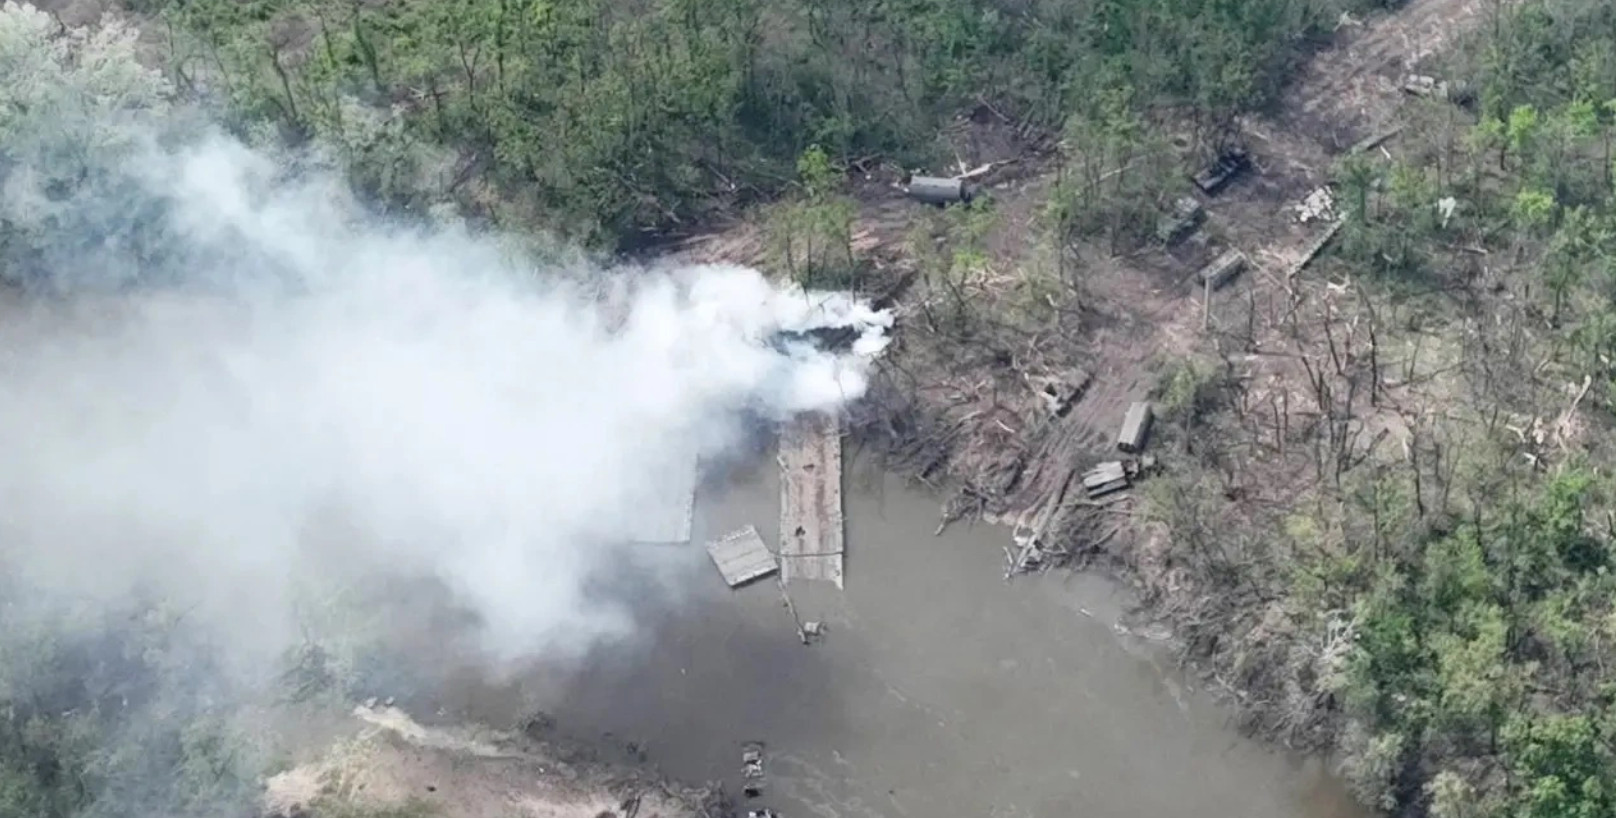 Các bức ảnh do quân đội Ukraine đăng tải cho thấy cầu phao và xe bọc thép bị phá hủy trên sông Siverskyi Donets, ở miền Đông Ukraine, vào ngày 13/5. Ảnh: Bộ Quốc phòng Ukraine.